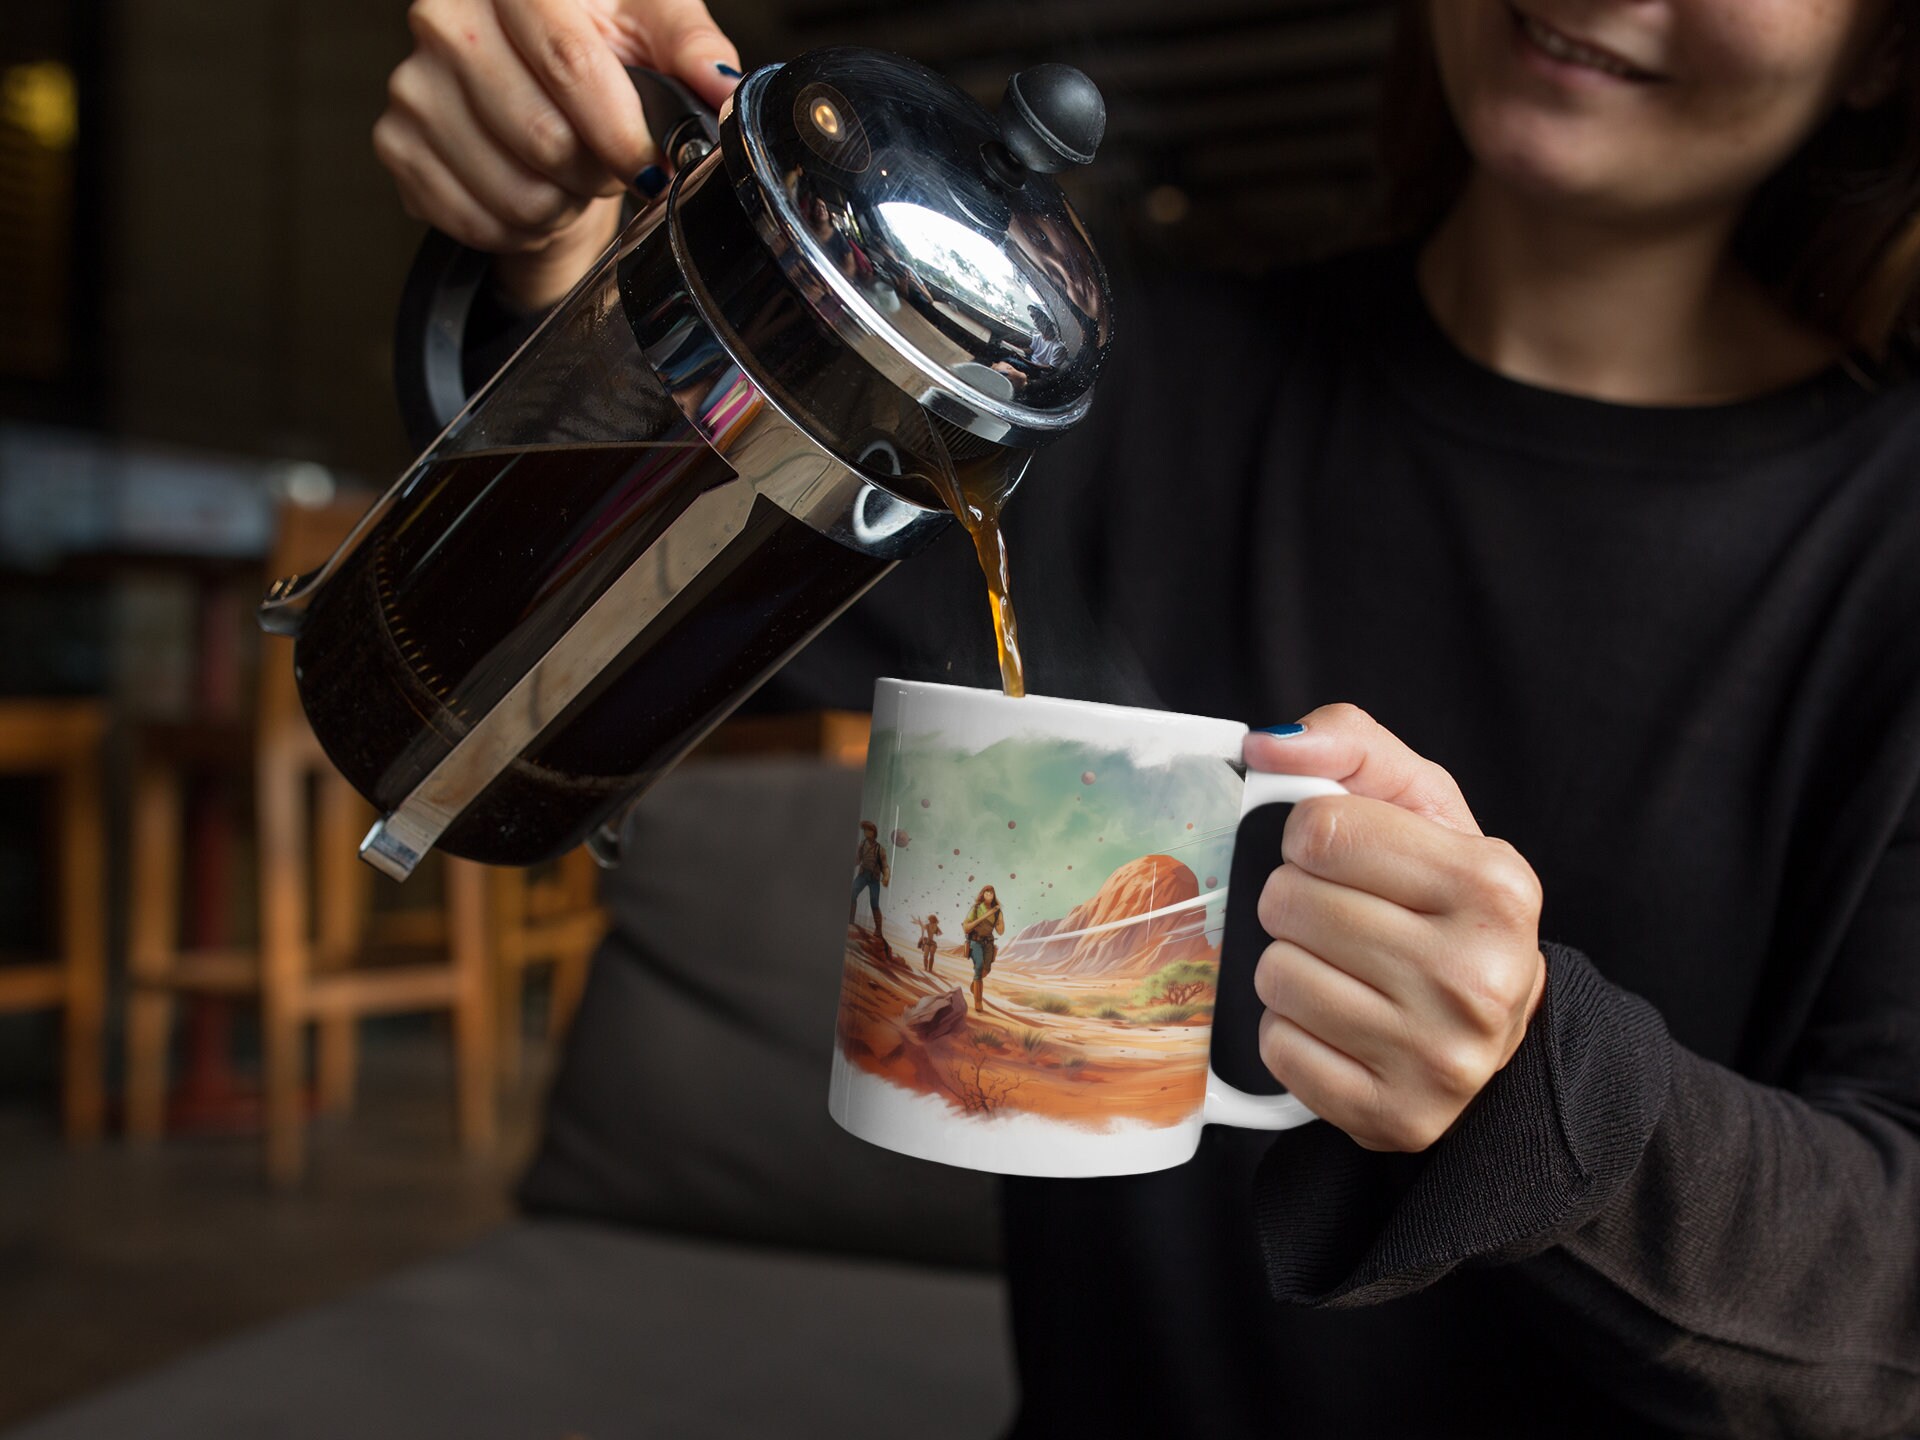 Raktajino coffee mug - Etsy.de